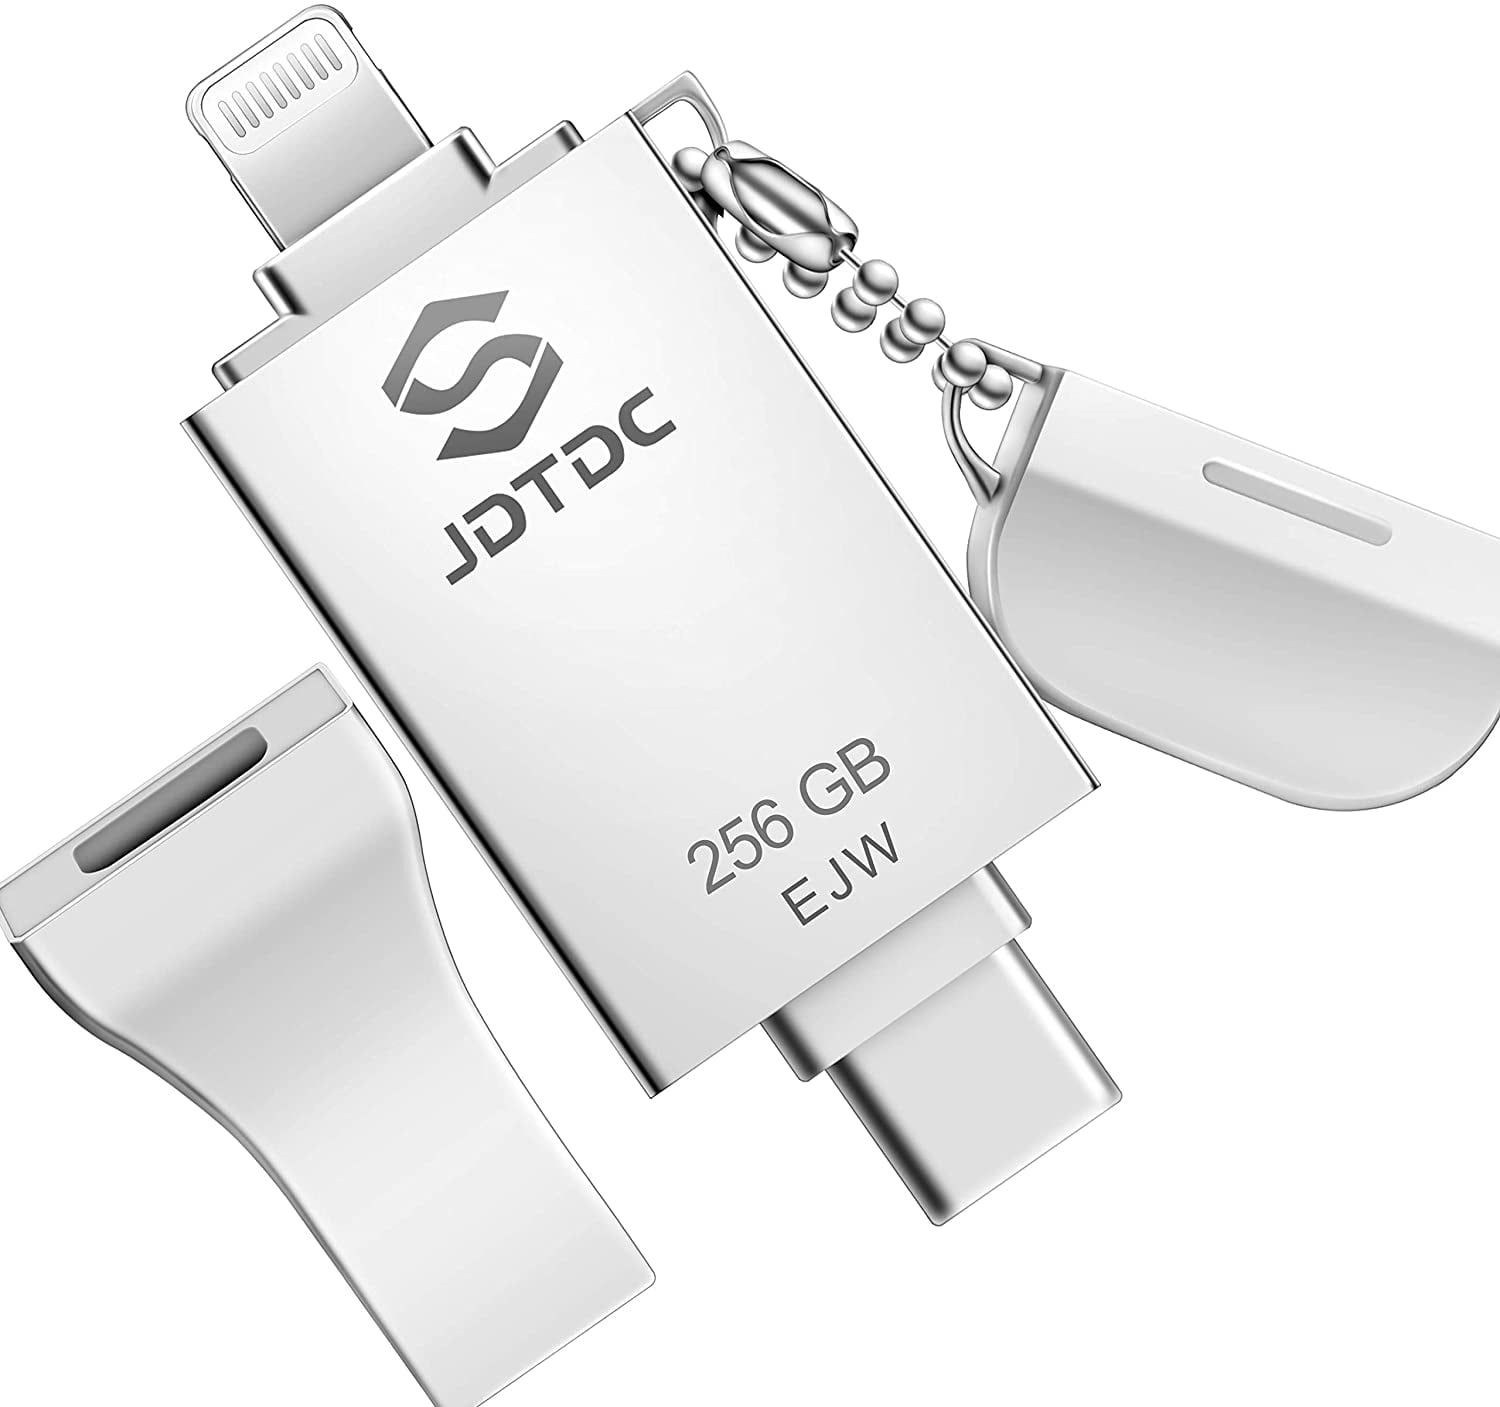 Clé USB 256 Go pour iPhone【Certifié MFI】 Patianco Cle USB iPhone iPad 3 en  1 Photostick Flah Drive Stockage pour iOS Mémoire Stick Pendrive pour OTG